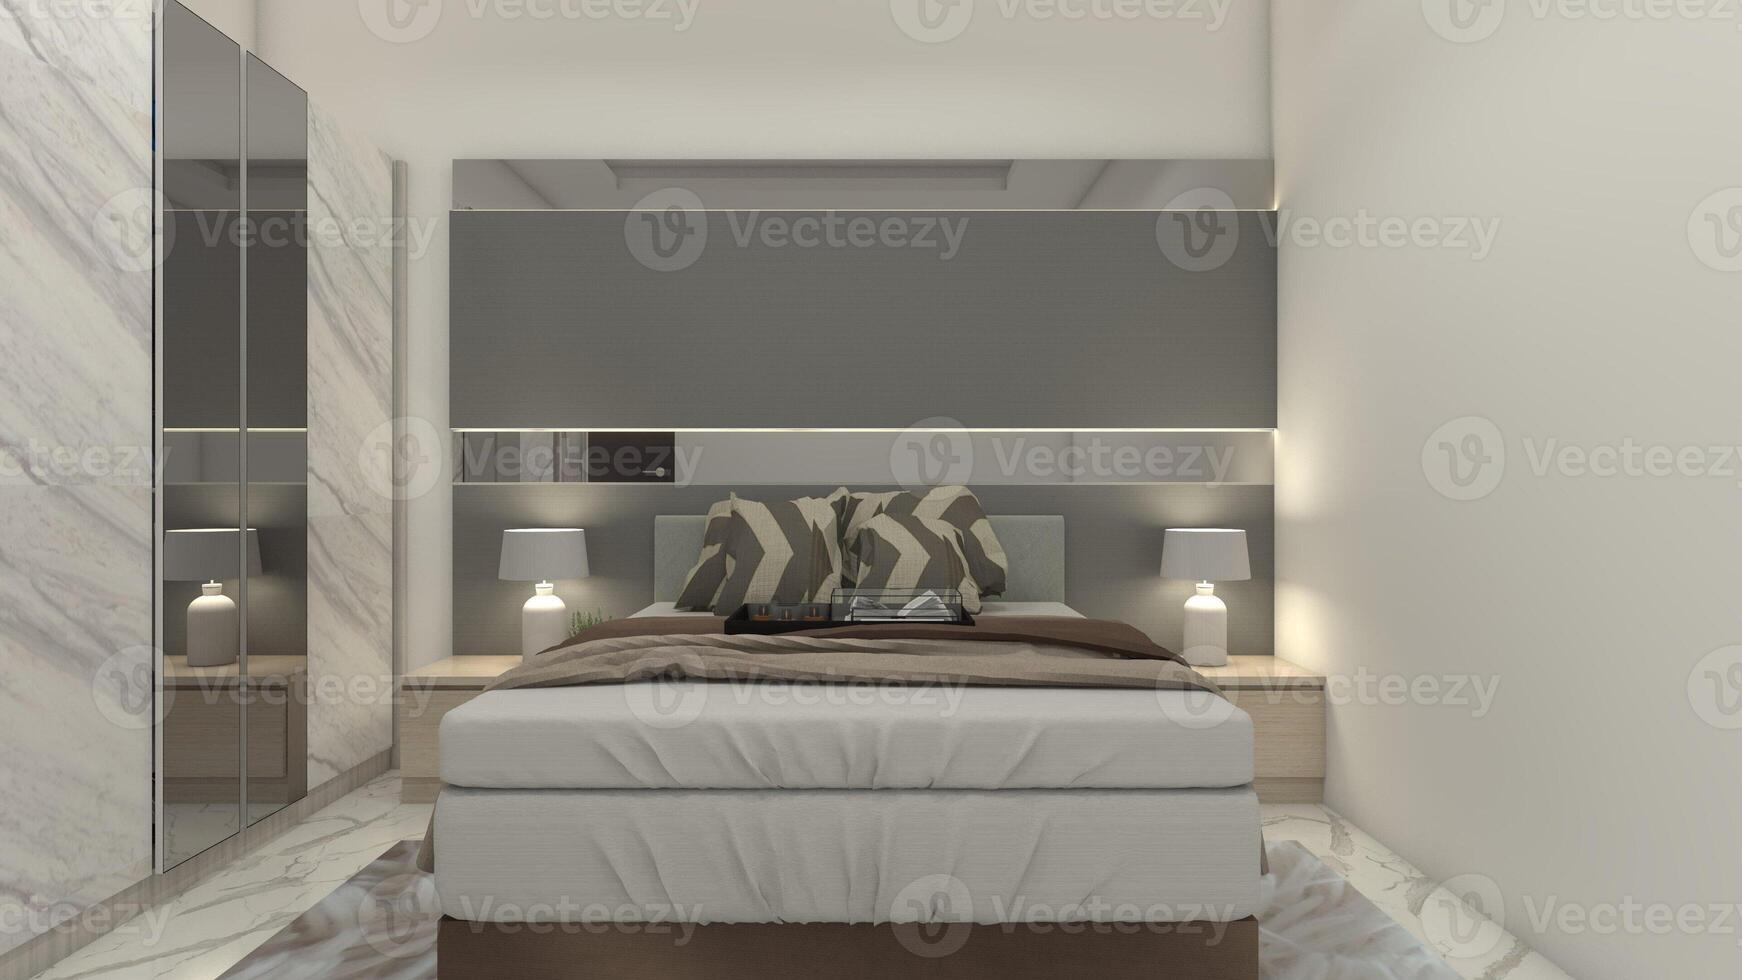 moderno y minimalista Maestro dormitorio diseño con cabecera panel decoración, 3d ilustración foto